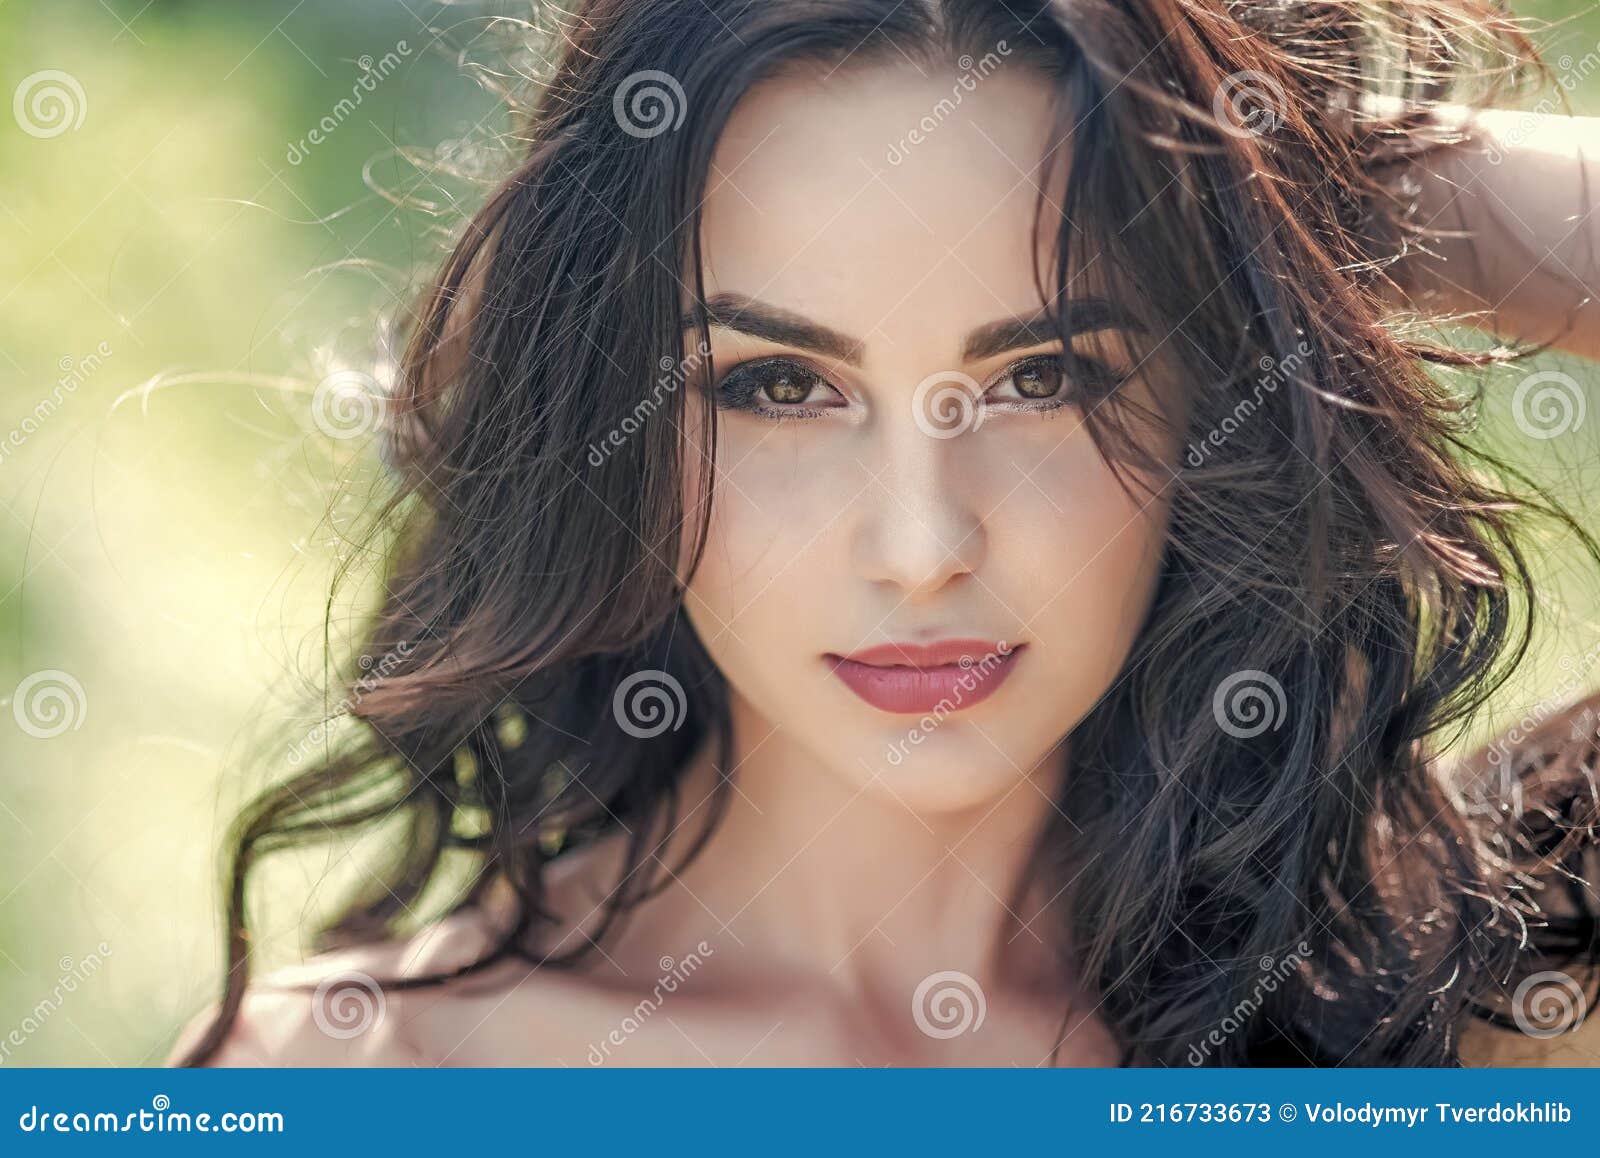 Woman Face Closeup Beauty Female Model Sensual Girl Stock Image